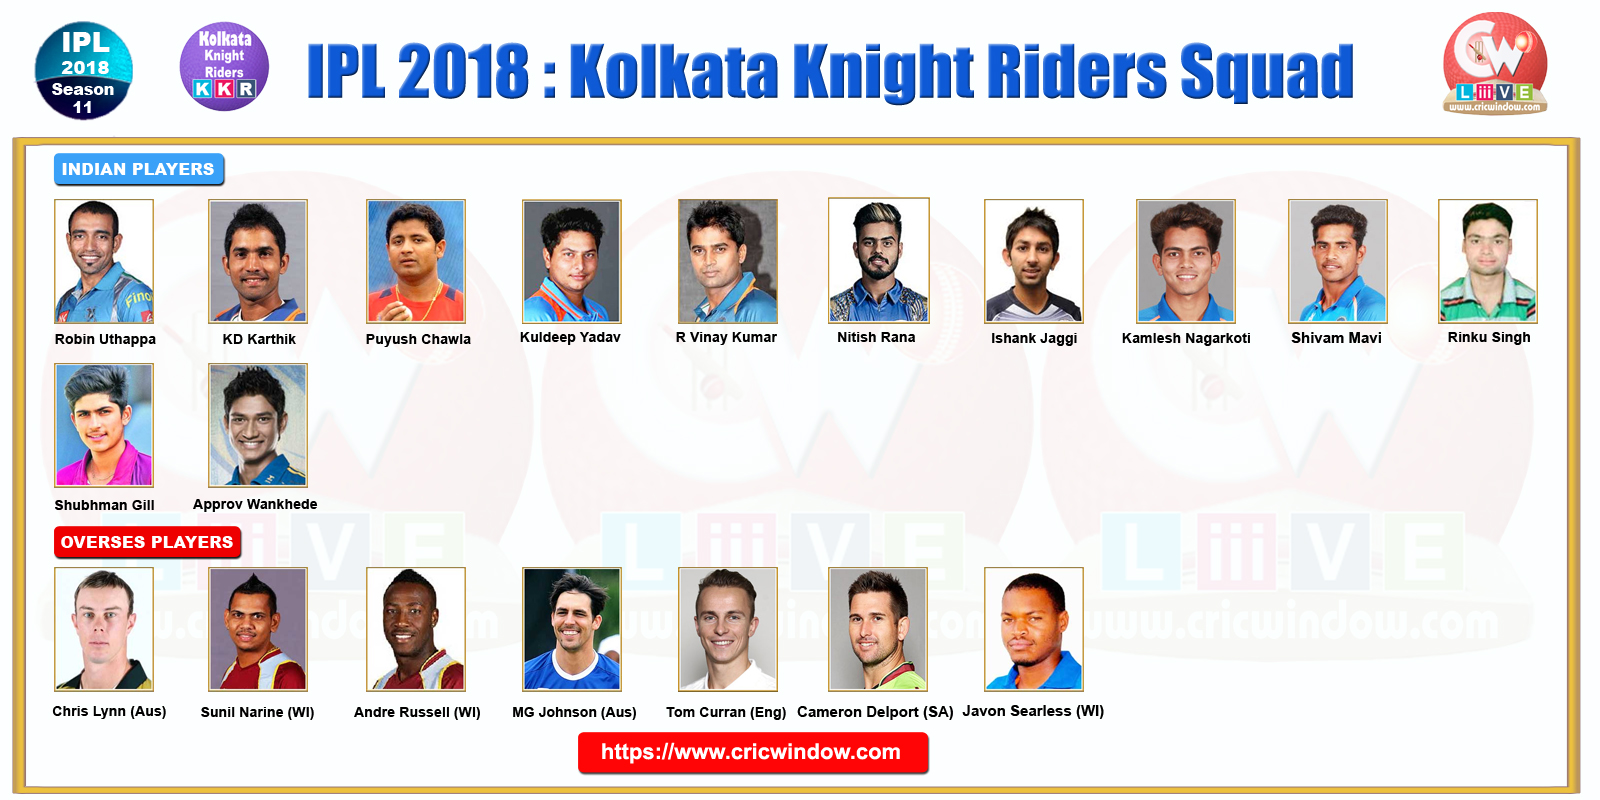 IPLT20 KKR Squad 2018